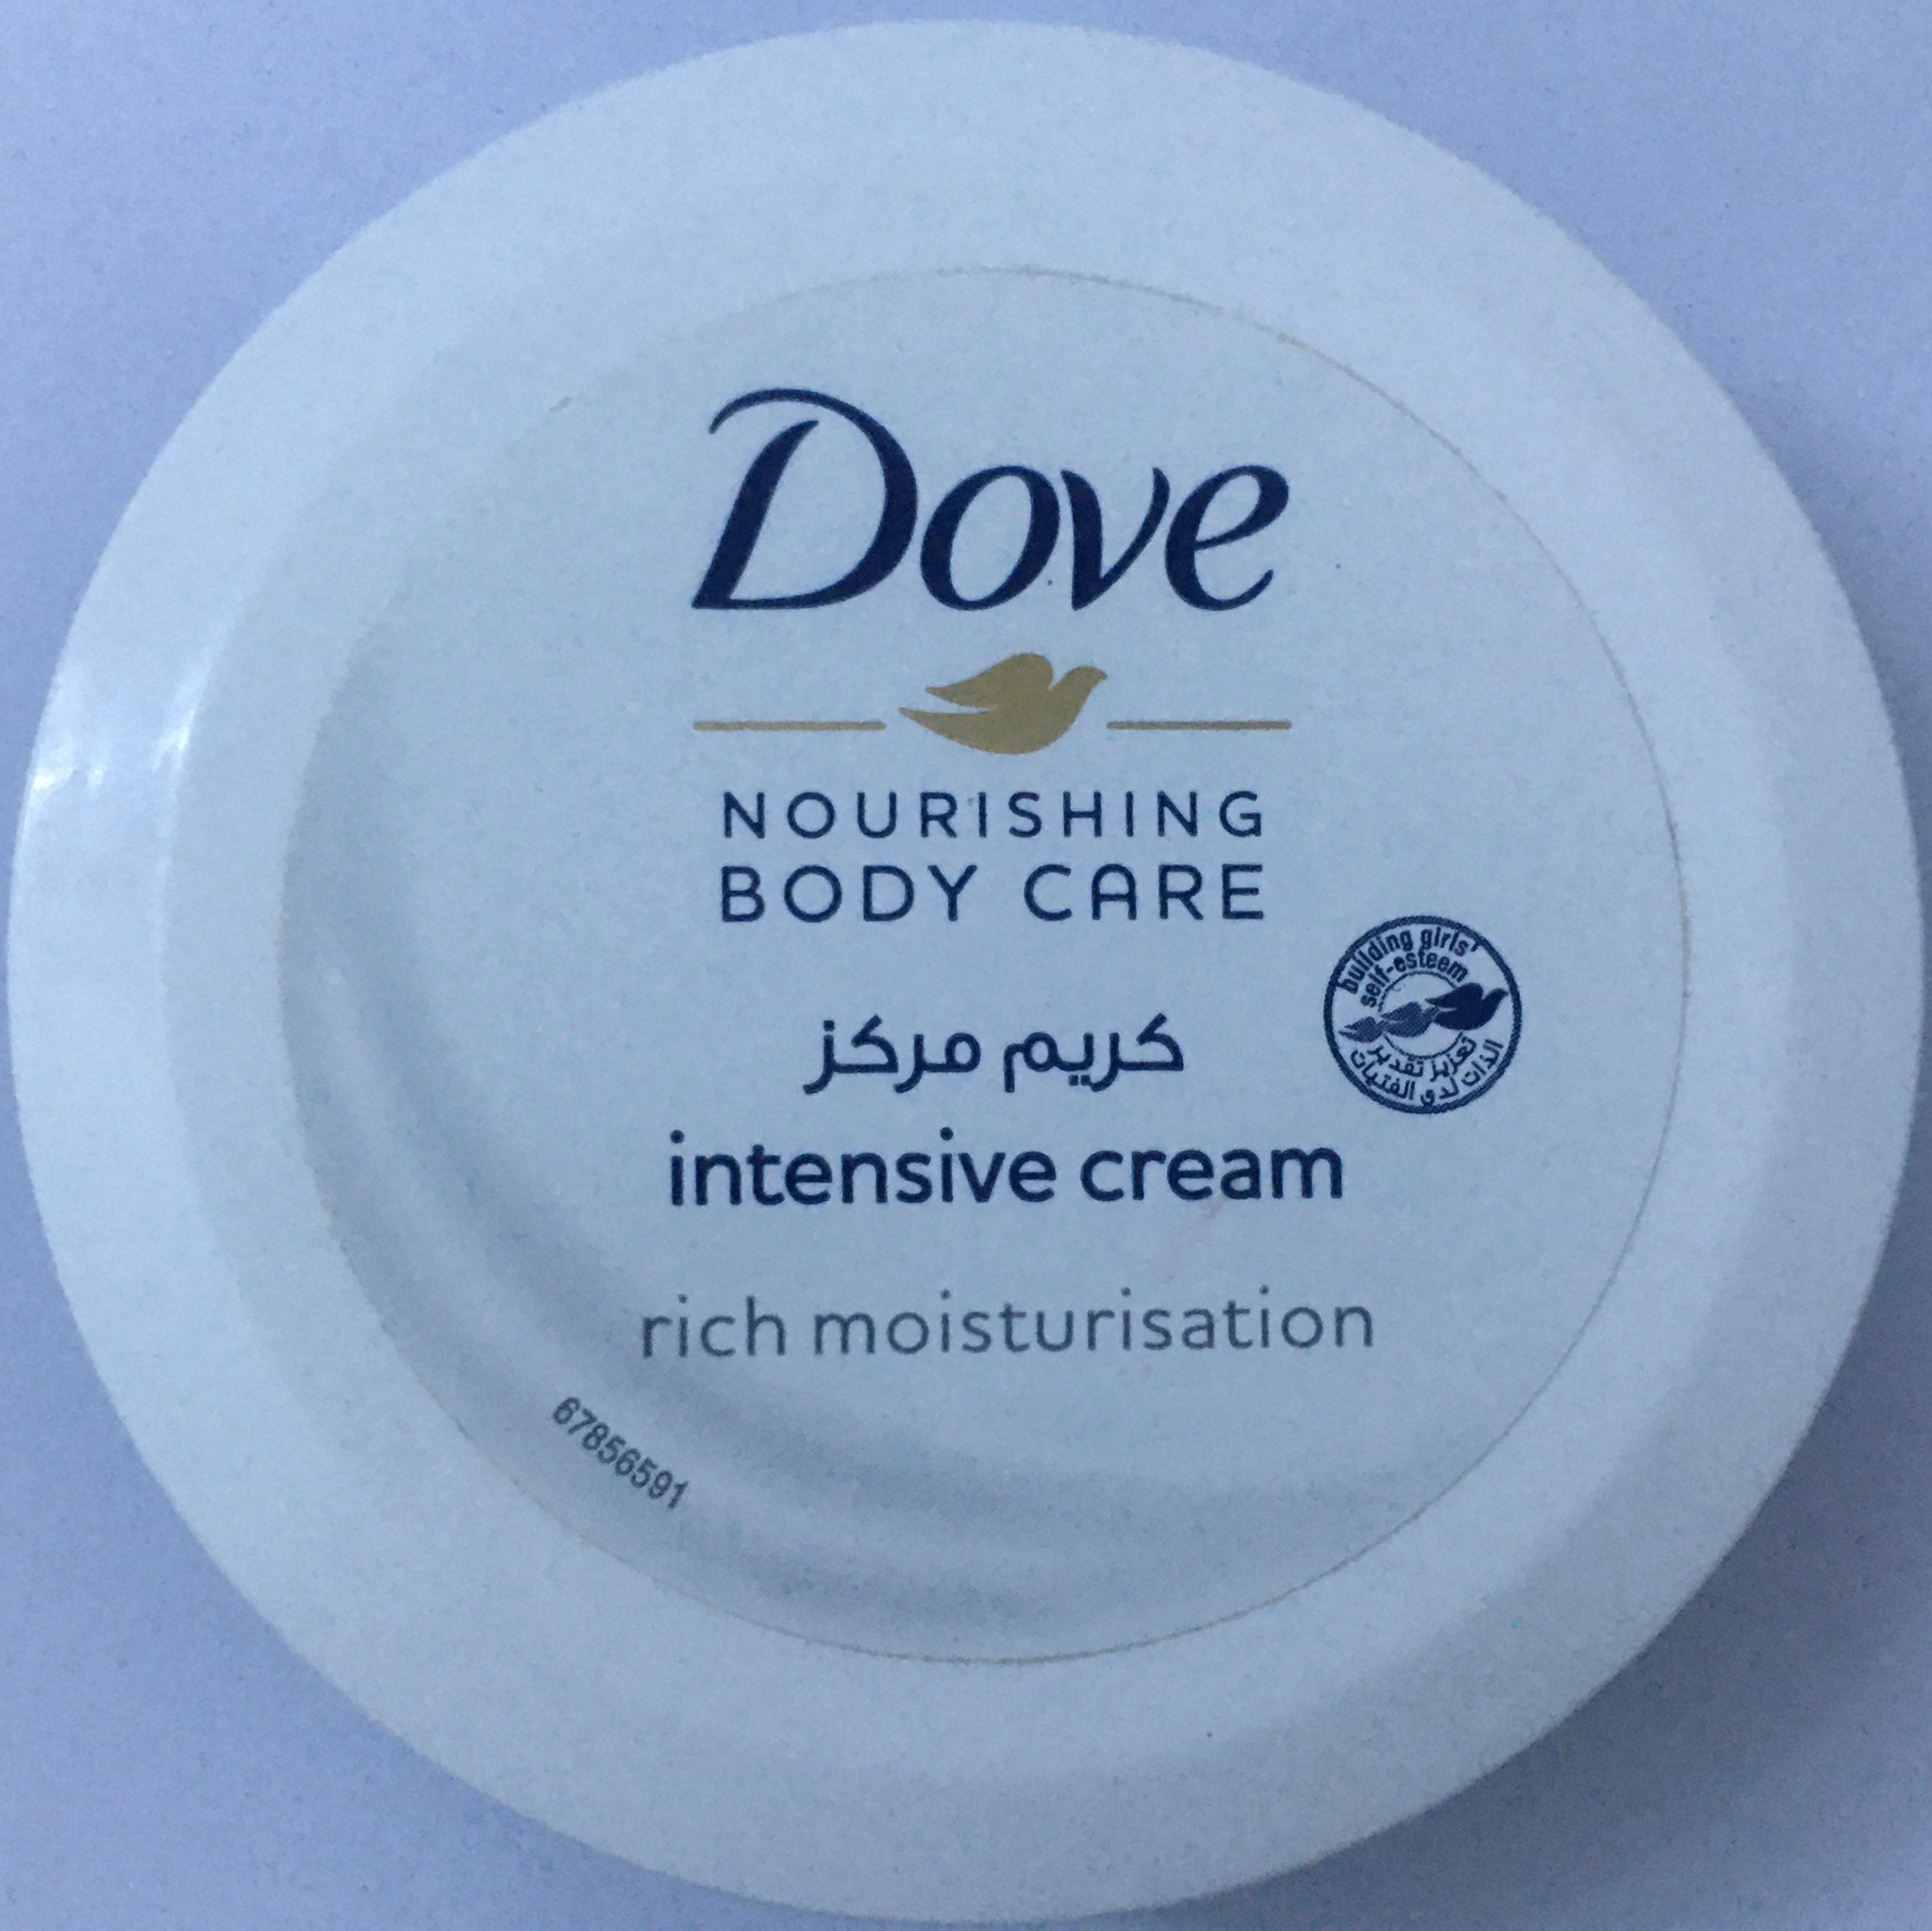 Dove Nourishing Body Care Intensive Cream Rich Moisturisation